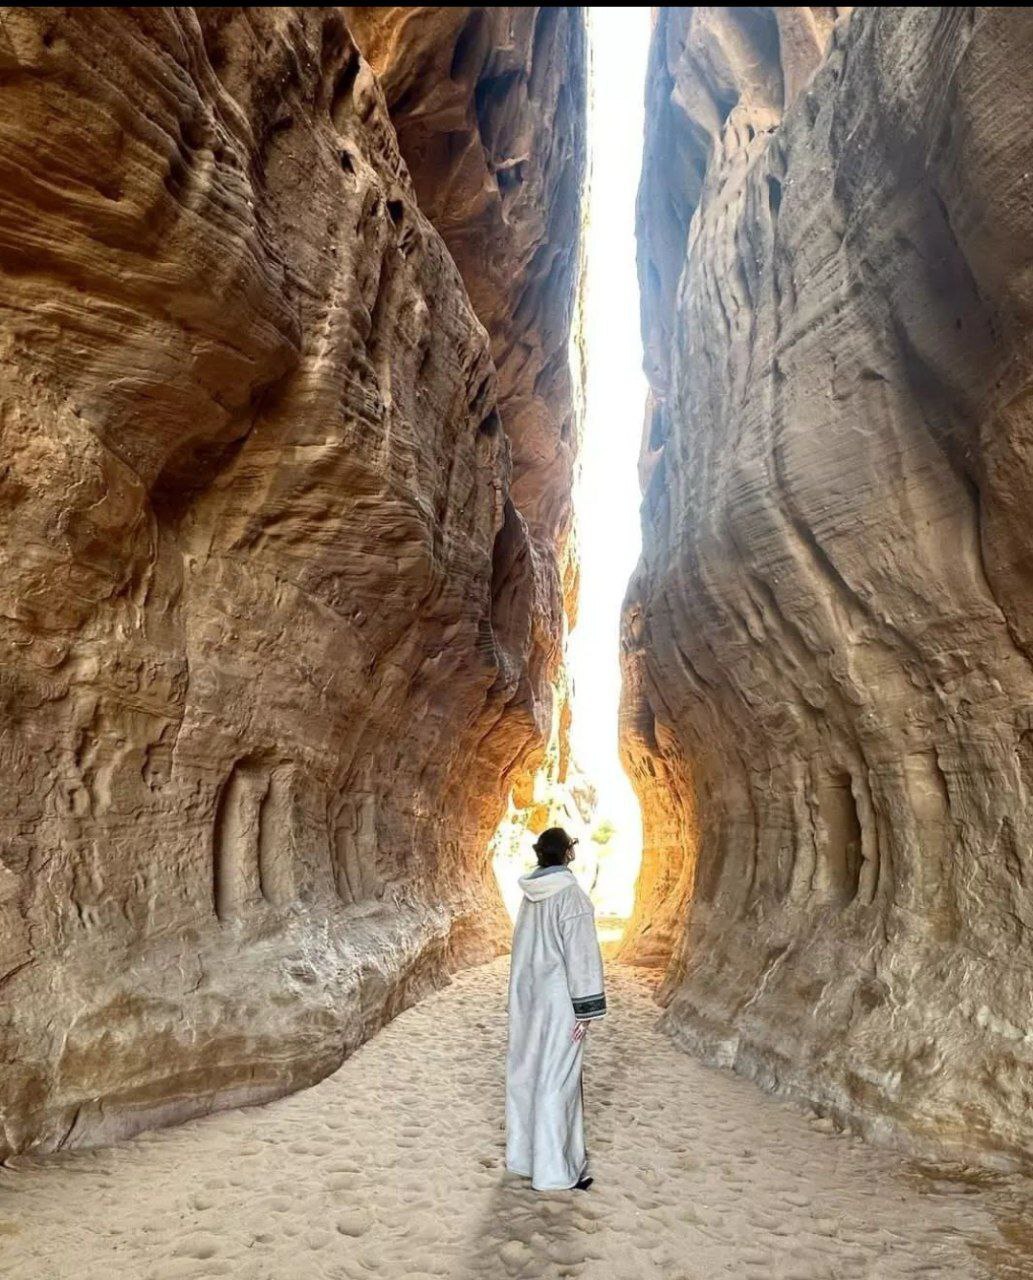 سرگرمی جدید جورجینا و رونالدو/ عکس های زوج محبوب با جاذبه های طبیعی و تاریخی عربستان سعودی